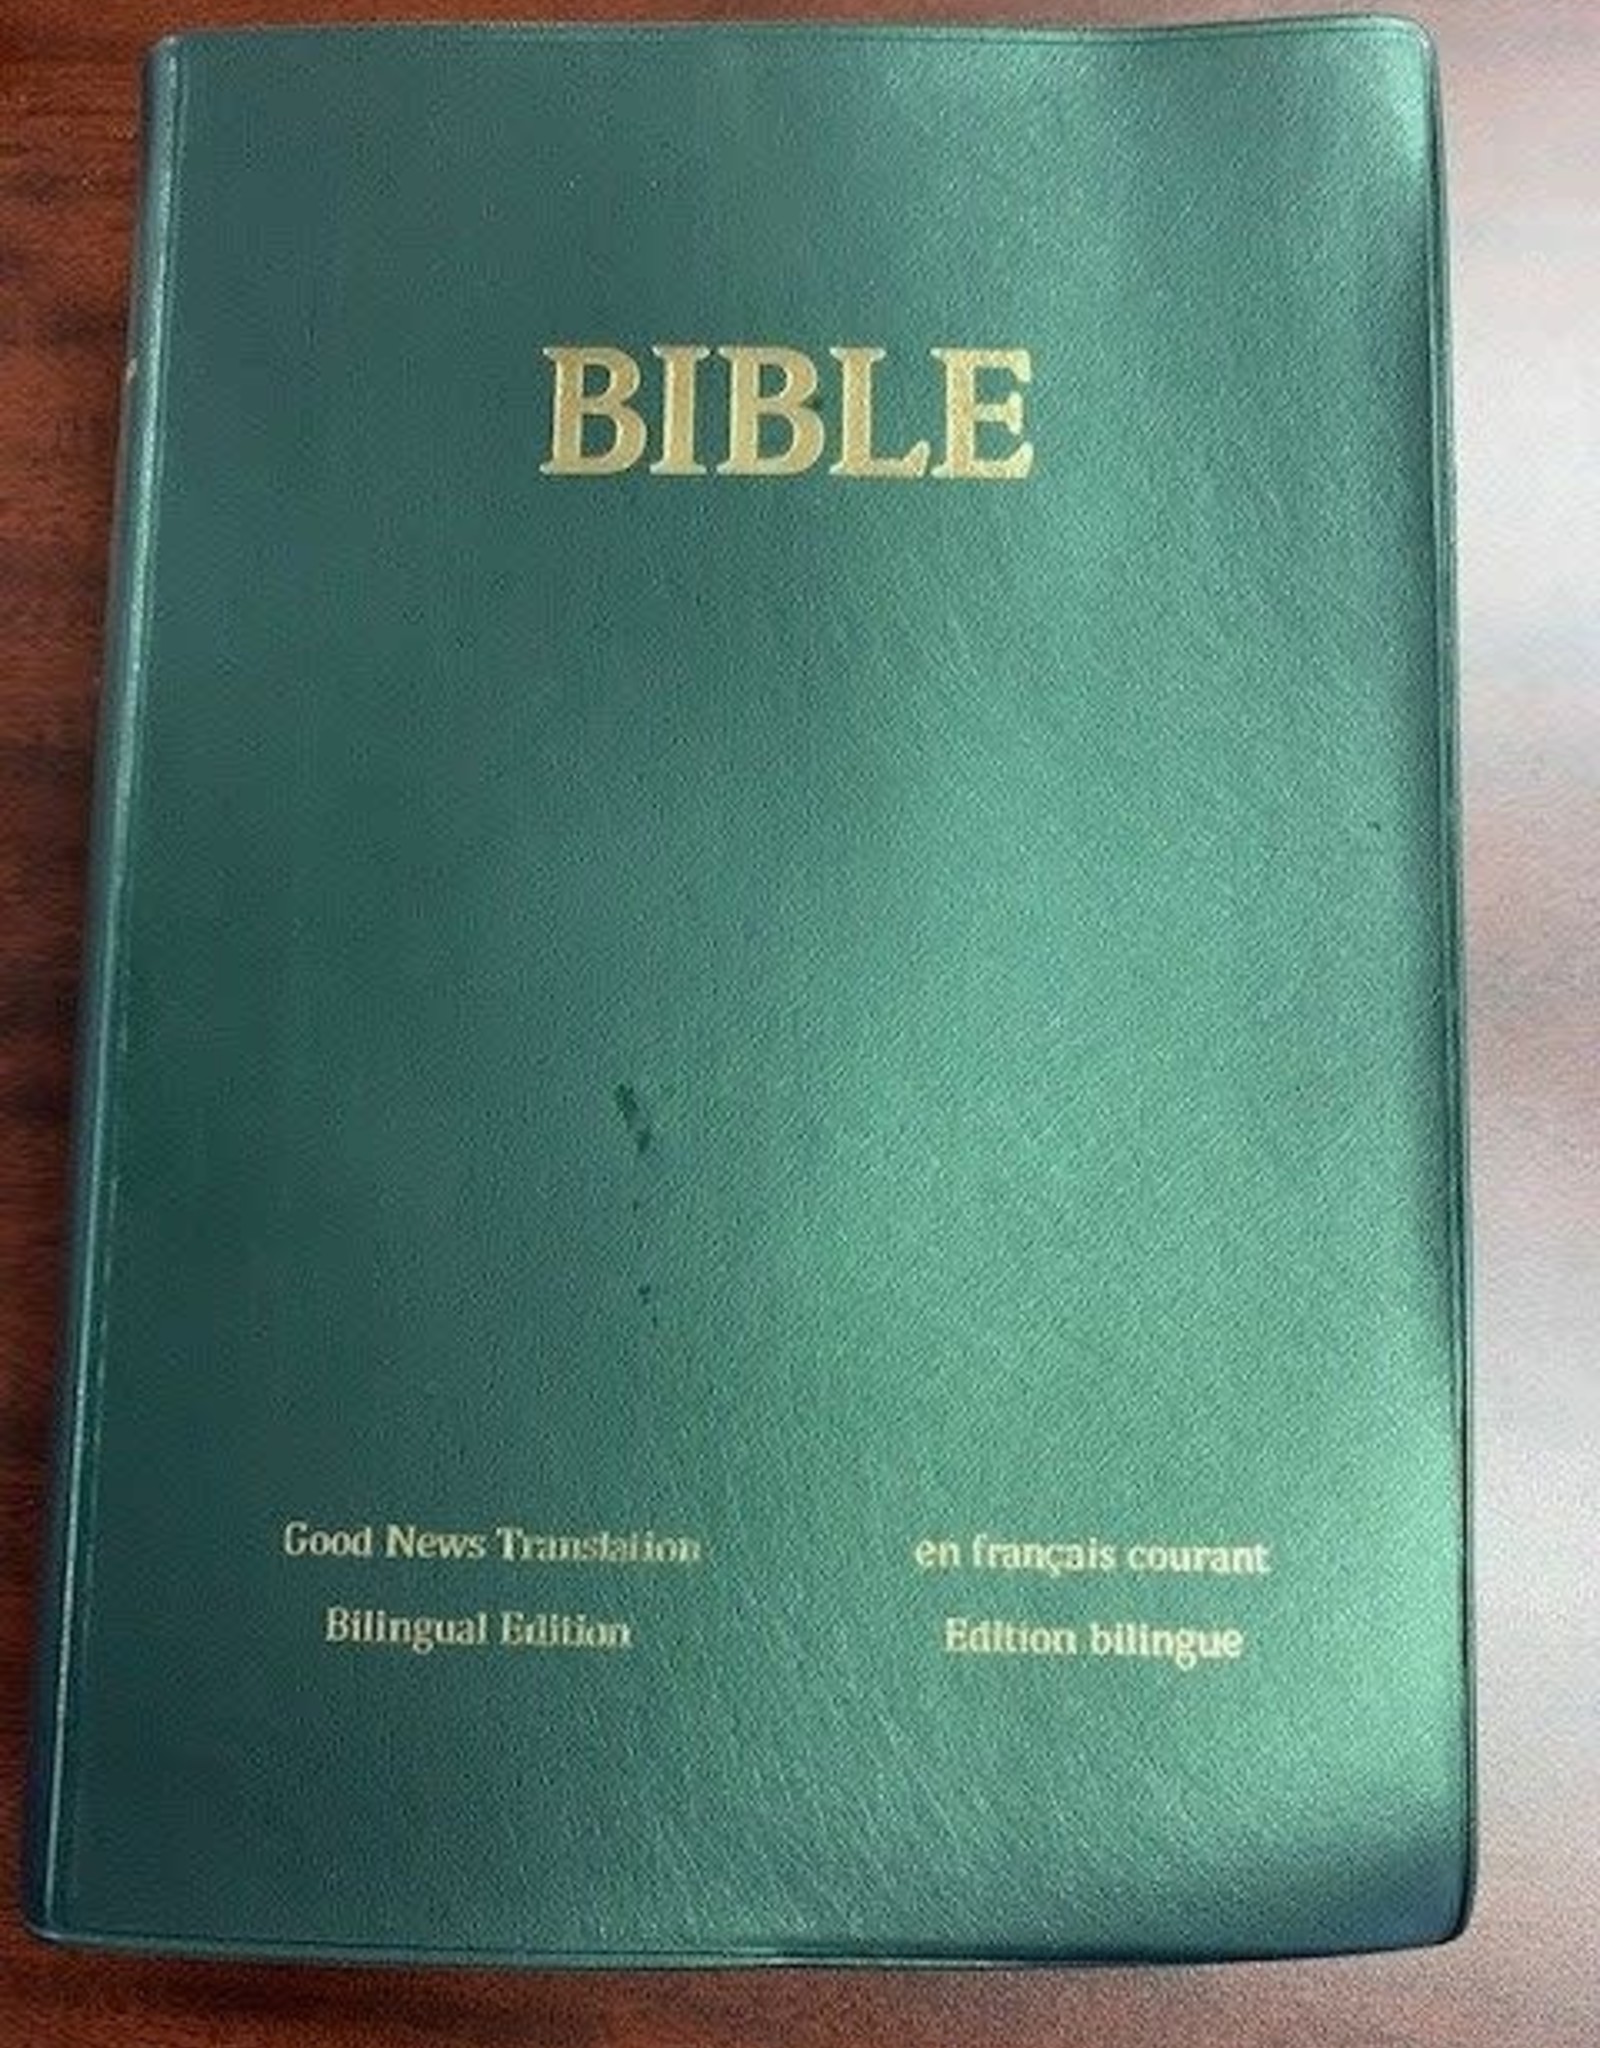 Édition bilingue Bible en français courant - bilingue (c.verte)